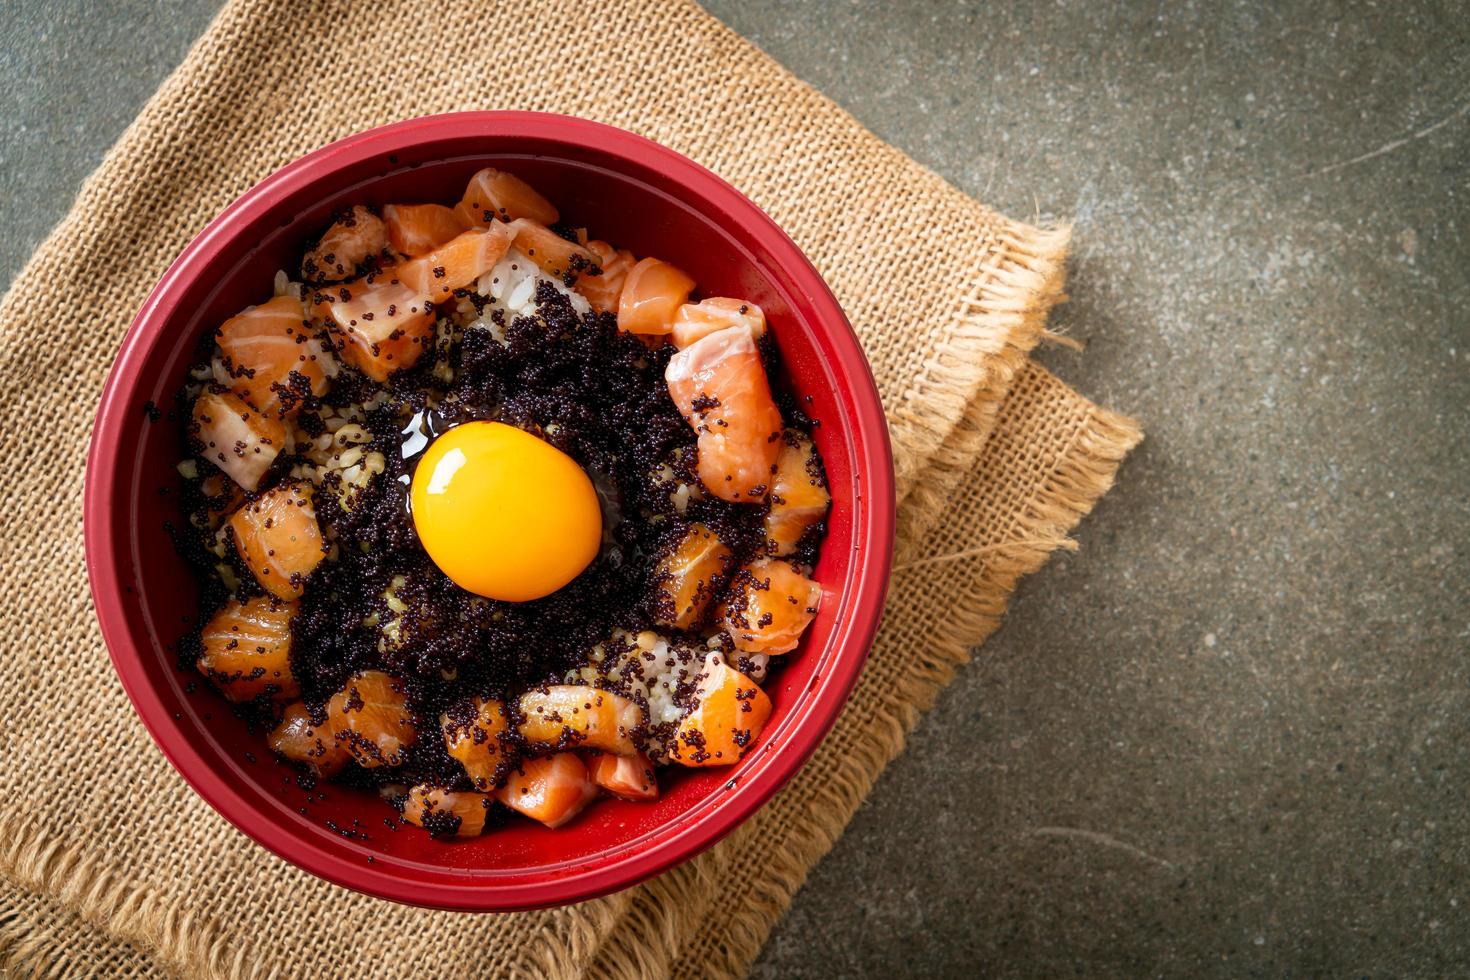 arroz japonês com salmão fresco cru, tobiko e ovo foto